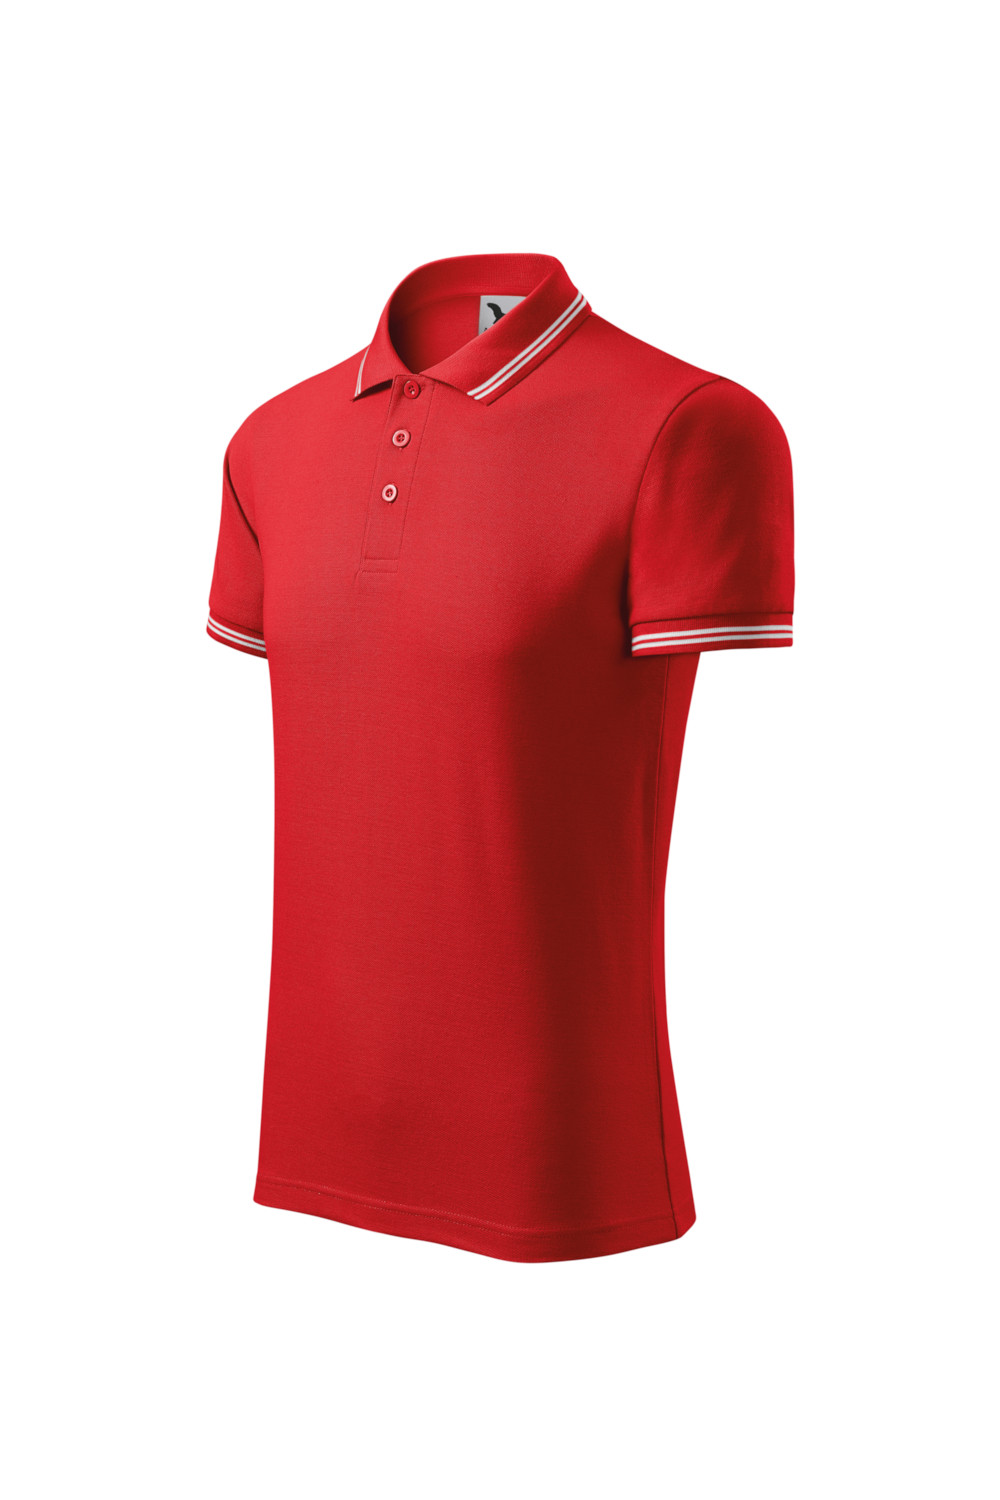 Koszulka Polo męska 65% bawełna 35% poliester czerwony URBAN 219 polo